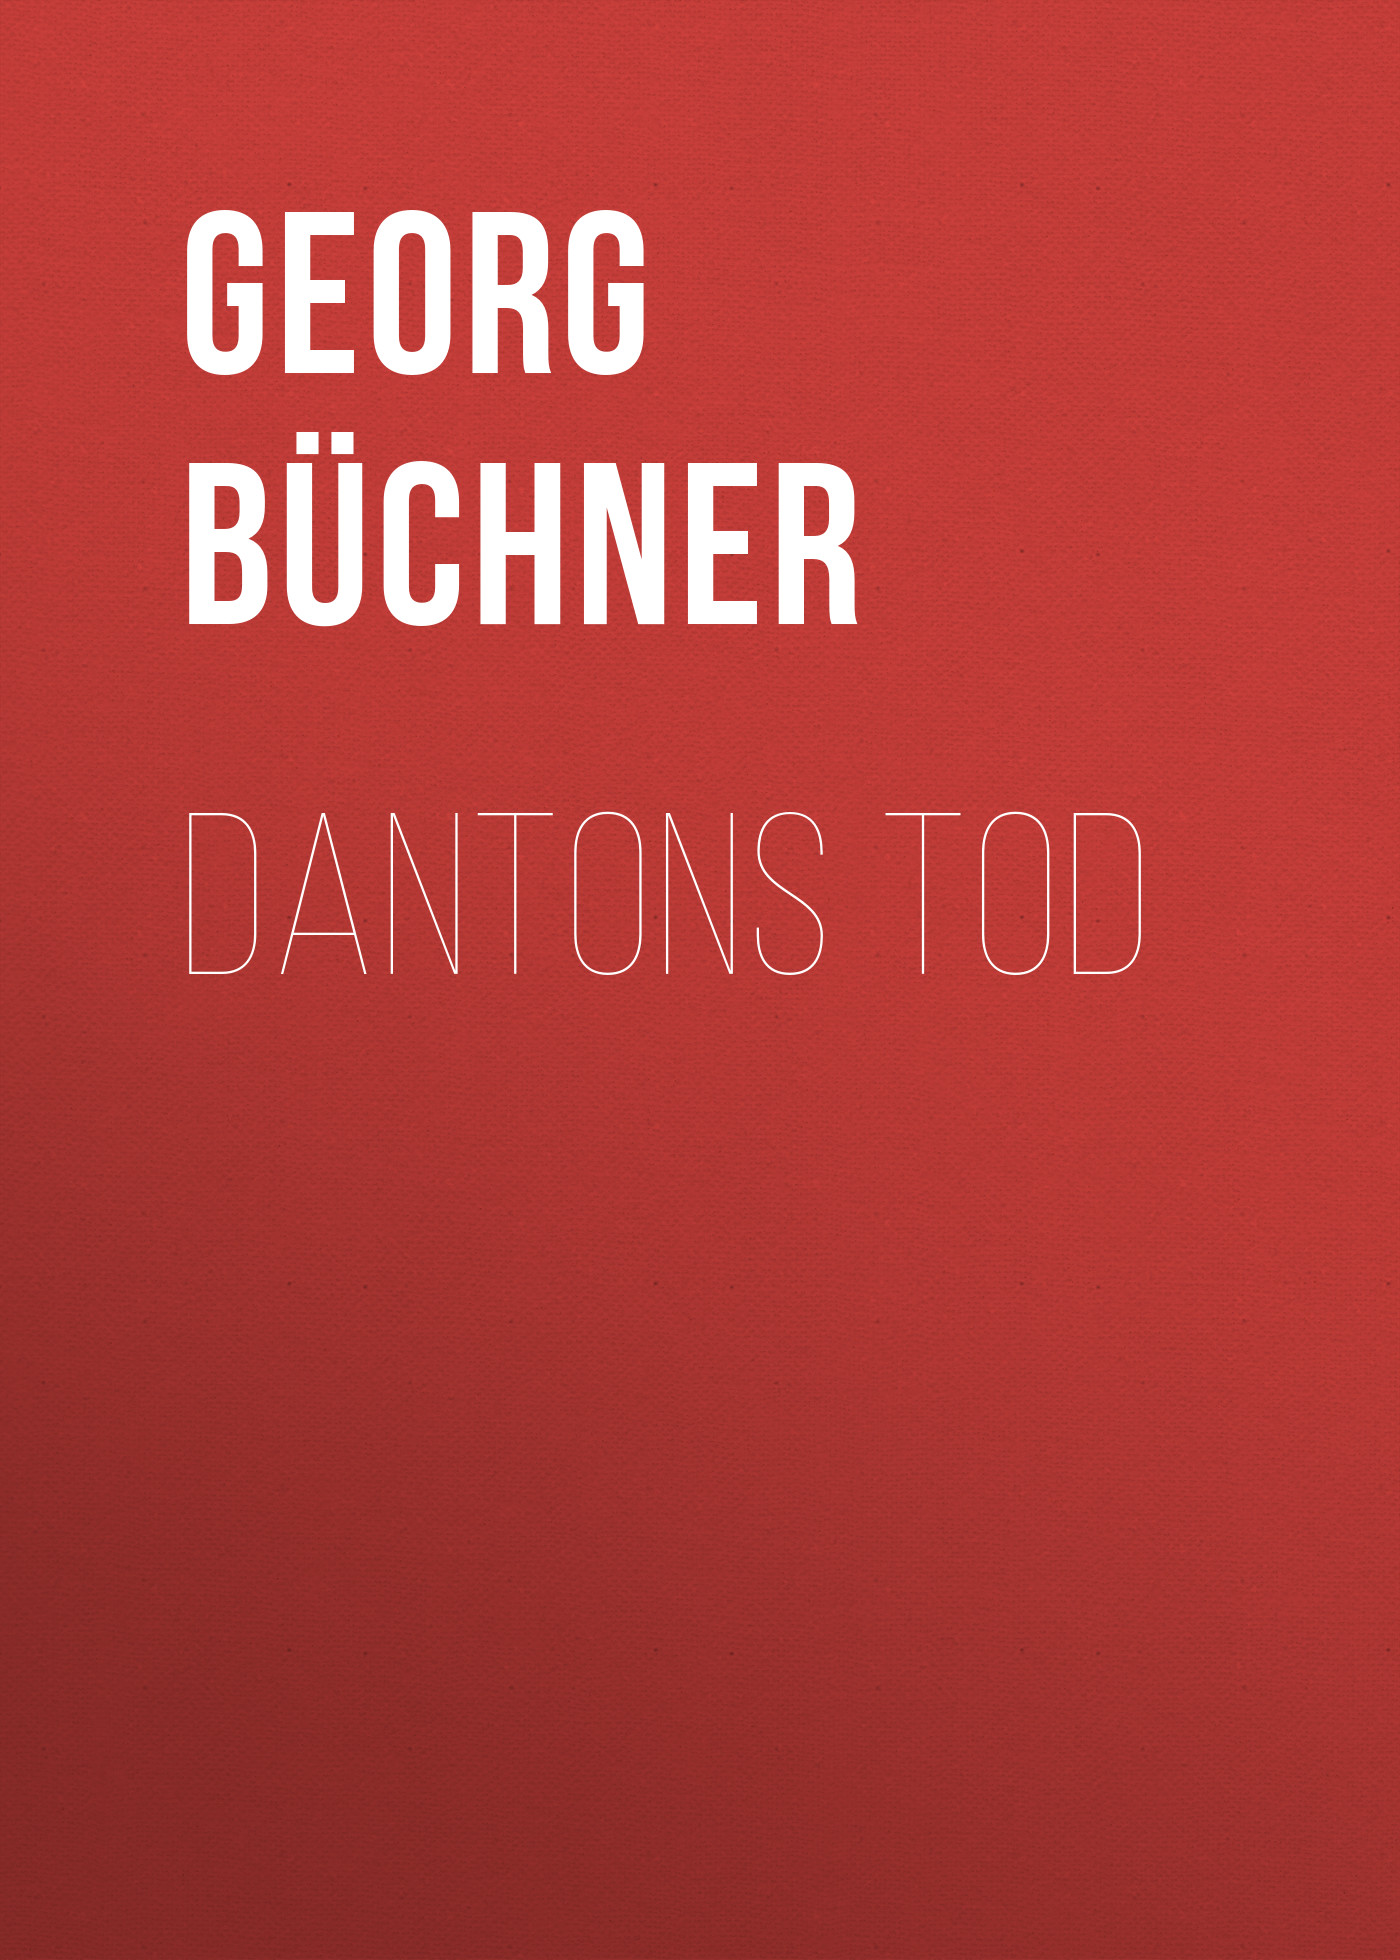 Книга Dantons Tod из серии , созданная Georg Buchner, может относится к жанру Зарубежная старинная литература, Зарубежная классика. Стоимость электронной книги Dantons Tod с идентификатором 21105206 составляет 5.99 руб.